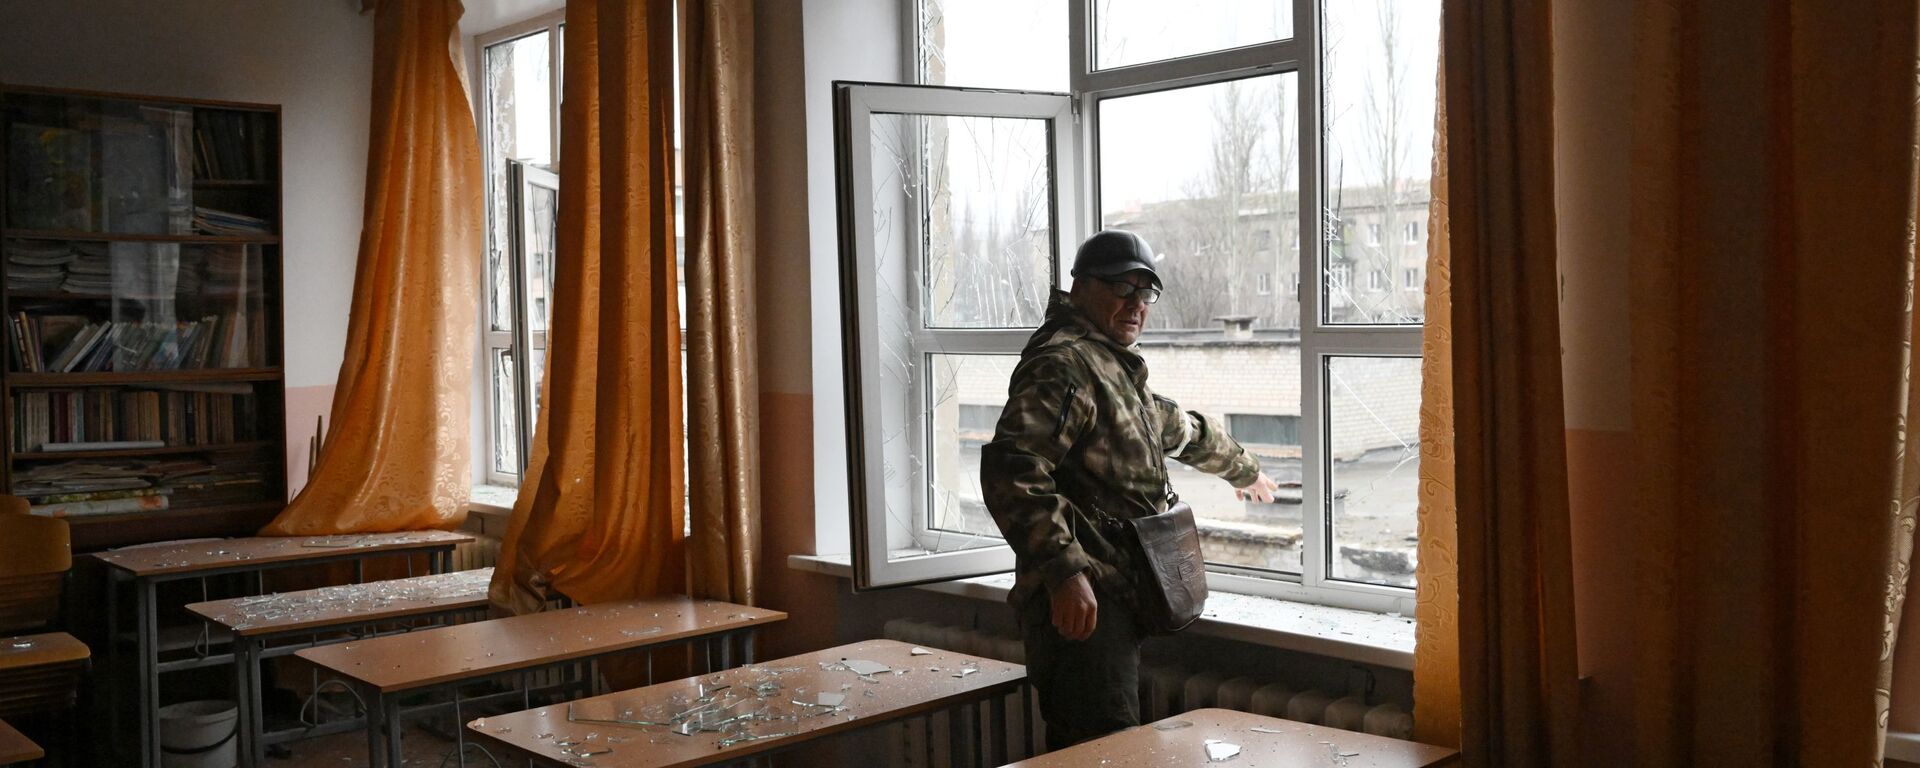 أحد عناصر الشرطة التباع لجمهورية دونيتسك الشعبية في الفصل الدراسي في مدرسة غورلوفكا، الذي تضرر من جراء القصف الأوكراني، 25 فبراير 2022 - سبوتنيك عربي, 1920, 26.02.2022